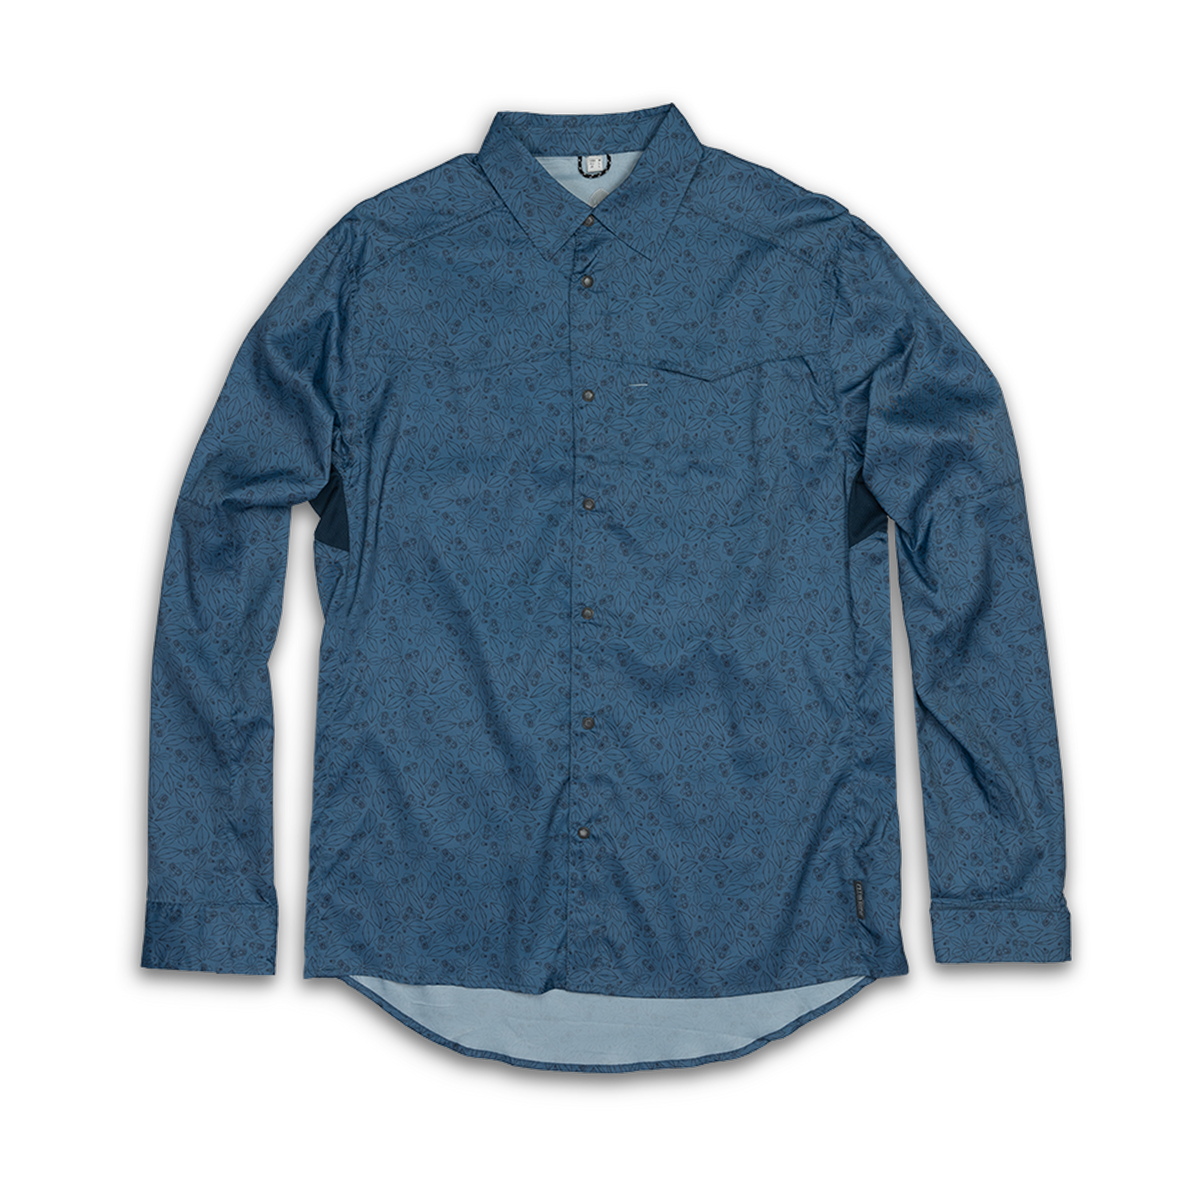  Guide Gear Men's Button Up Shirt Long Sleeve Chamois